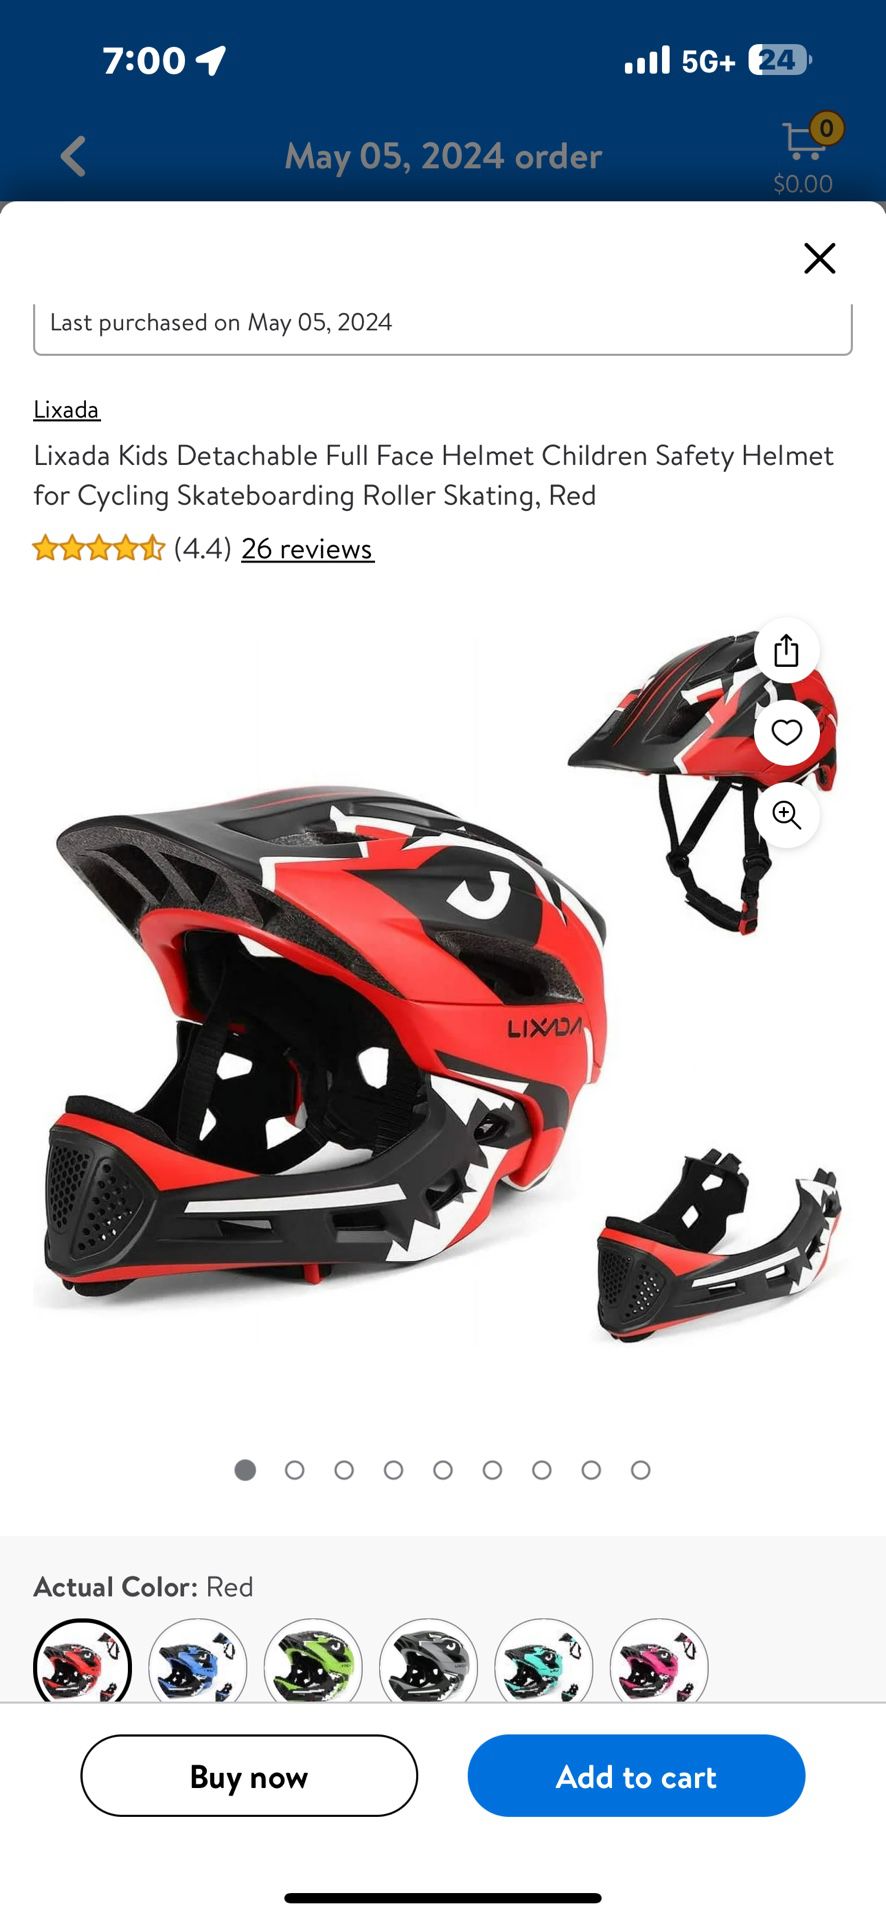 Lixada Kids Detachable Full Face Helmet Children Safety Helmet for Cycling Skateboarding Roller Skating, Red